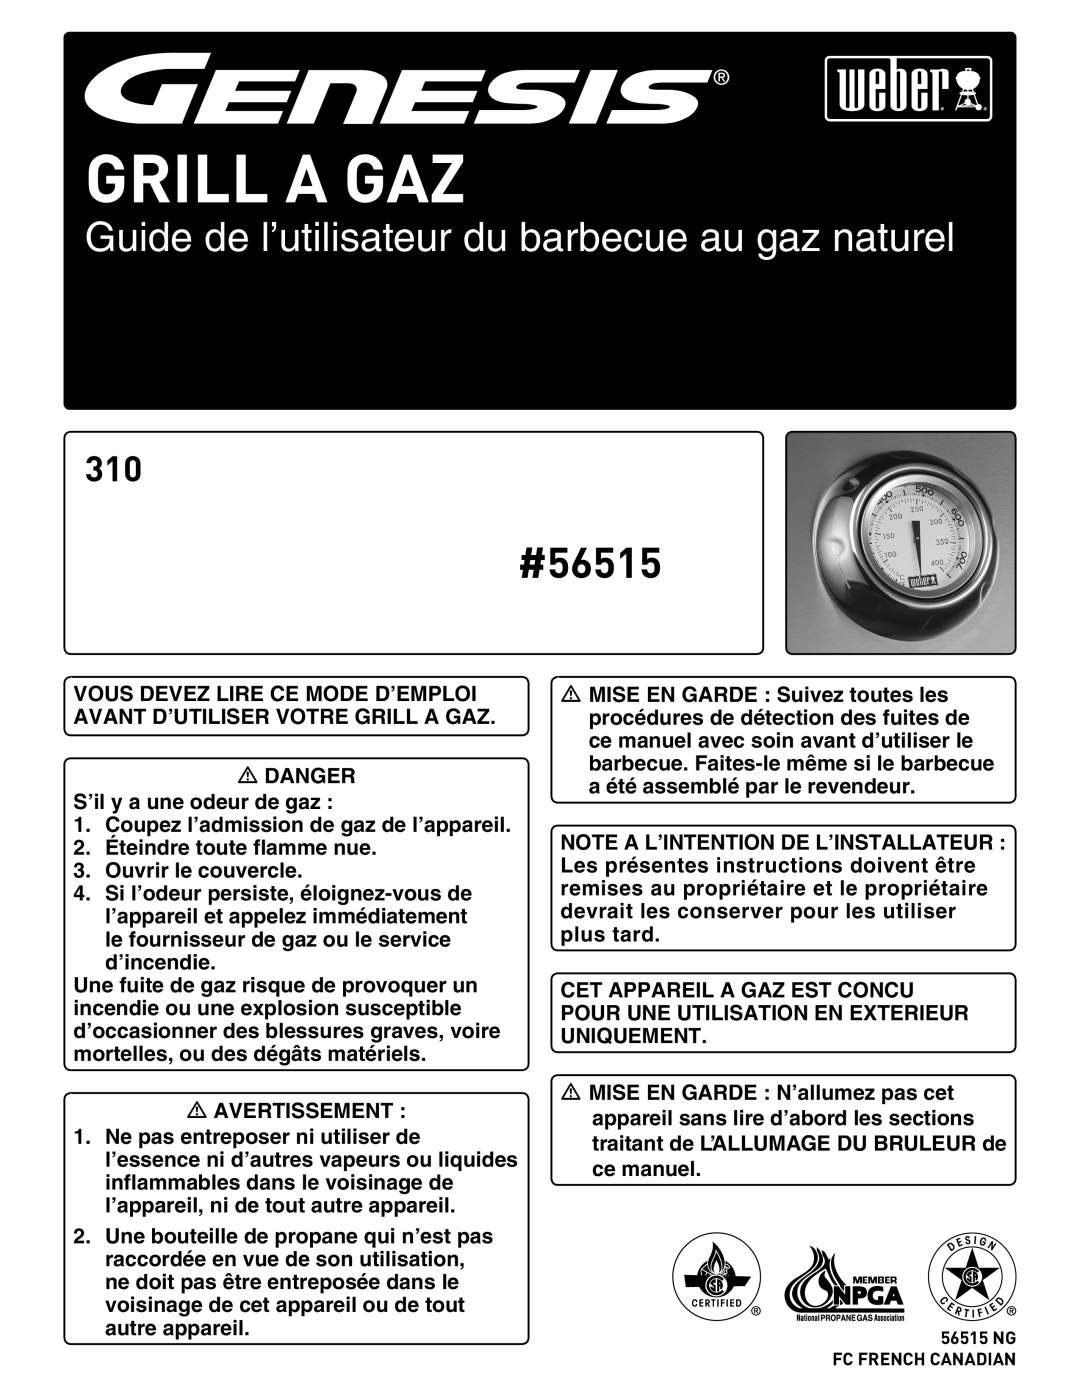 Weber manual Grill A Gaz, Guide de l’utilisateur du barbecue au gaz naturel, #56515 